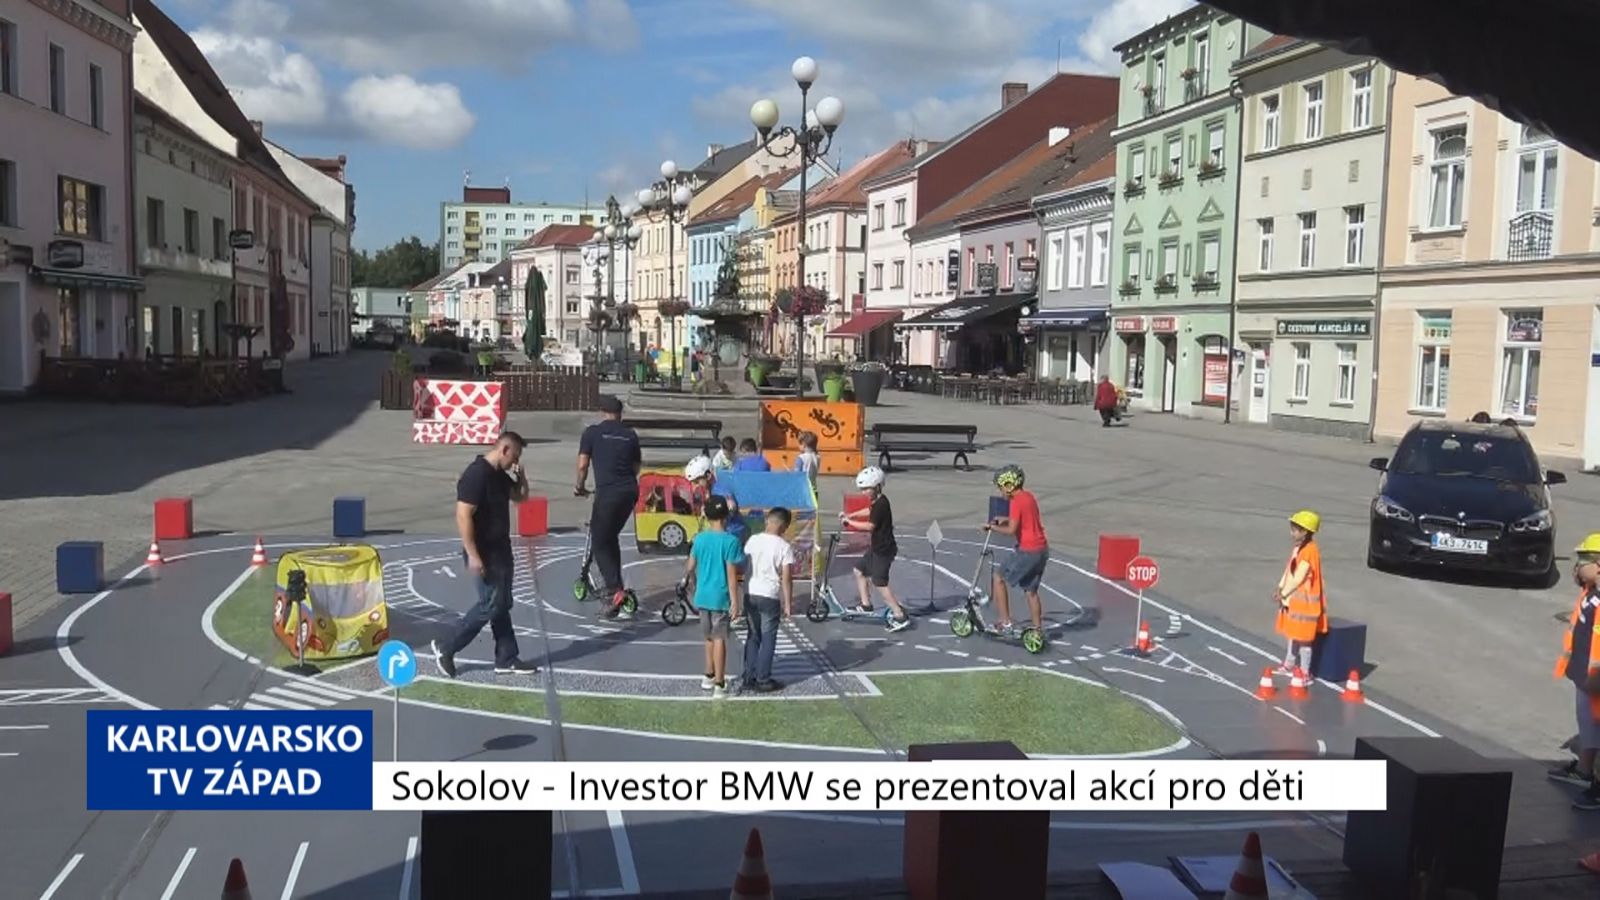 Sokolov: Investor BMW se prezentoval akcí pro děti (TV Západ)